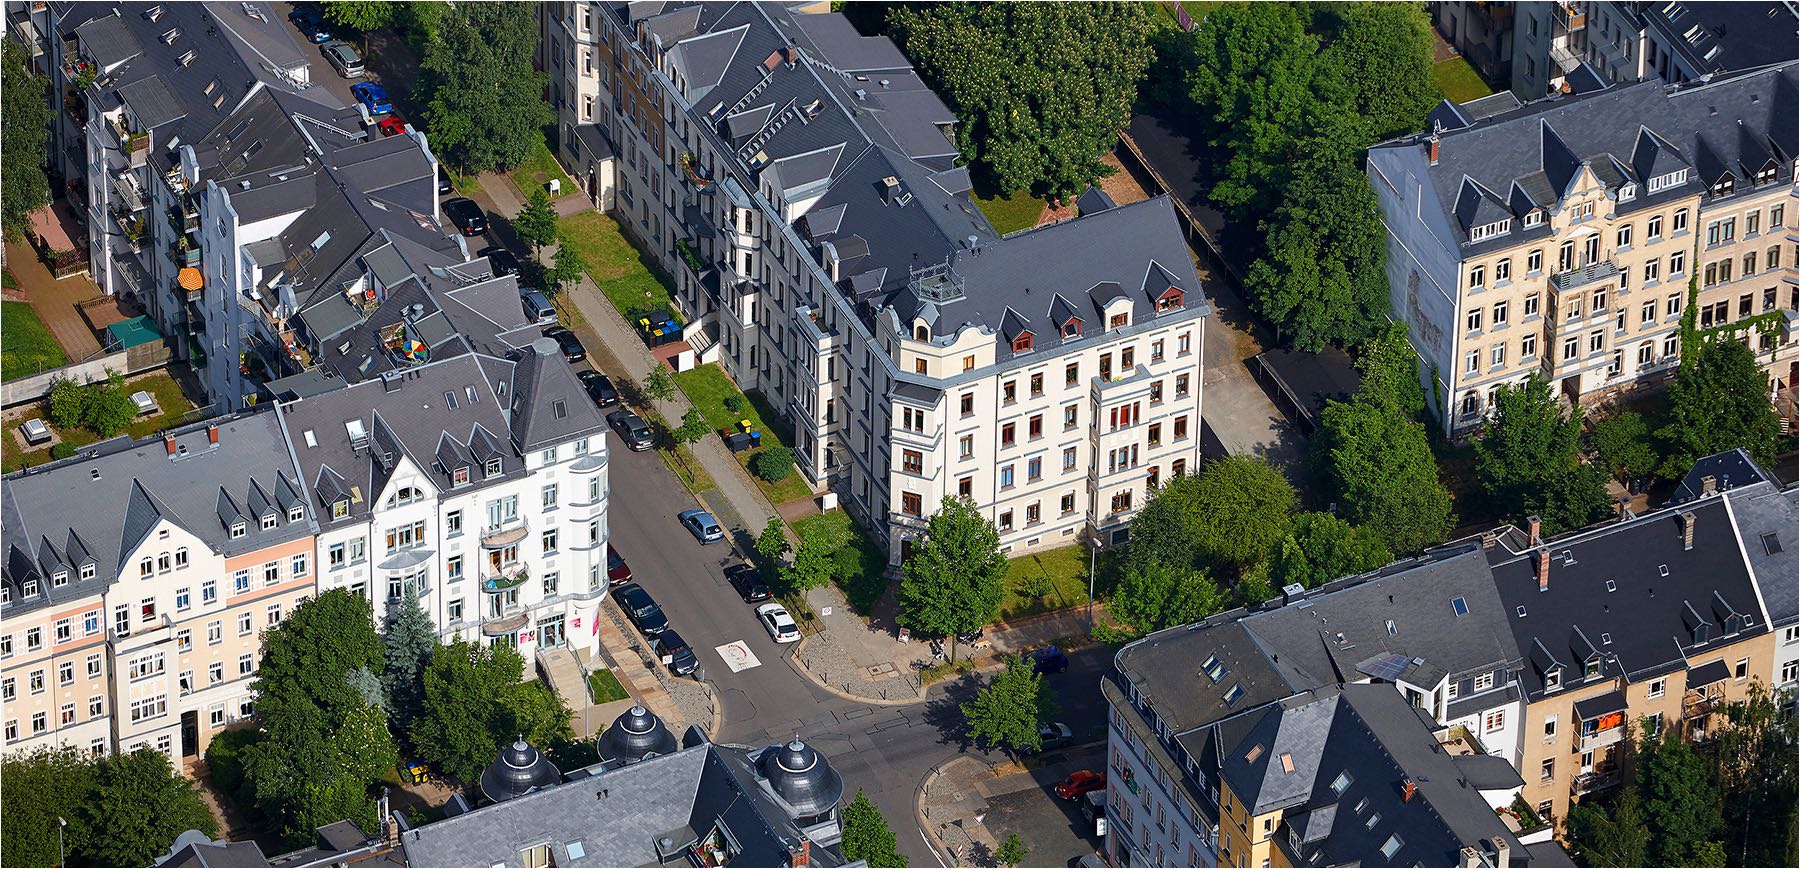  Luftbildfotografie. Saniertes Innenstadtviertel in Chemnitz aus der Vogelperspektive gesehen. Aufgenommen mit analog Kleinbildtechnik. Copyright by Fotostudio Jörg Riethausen 